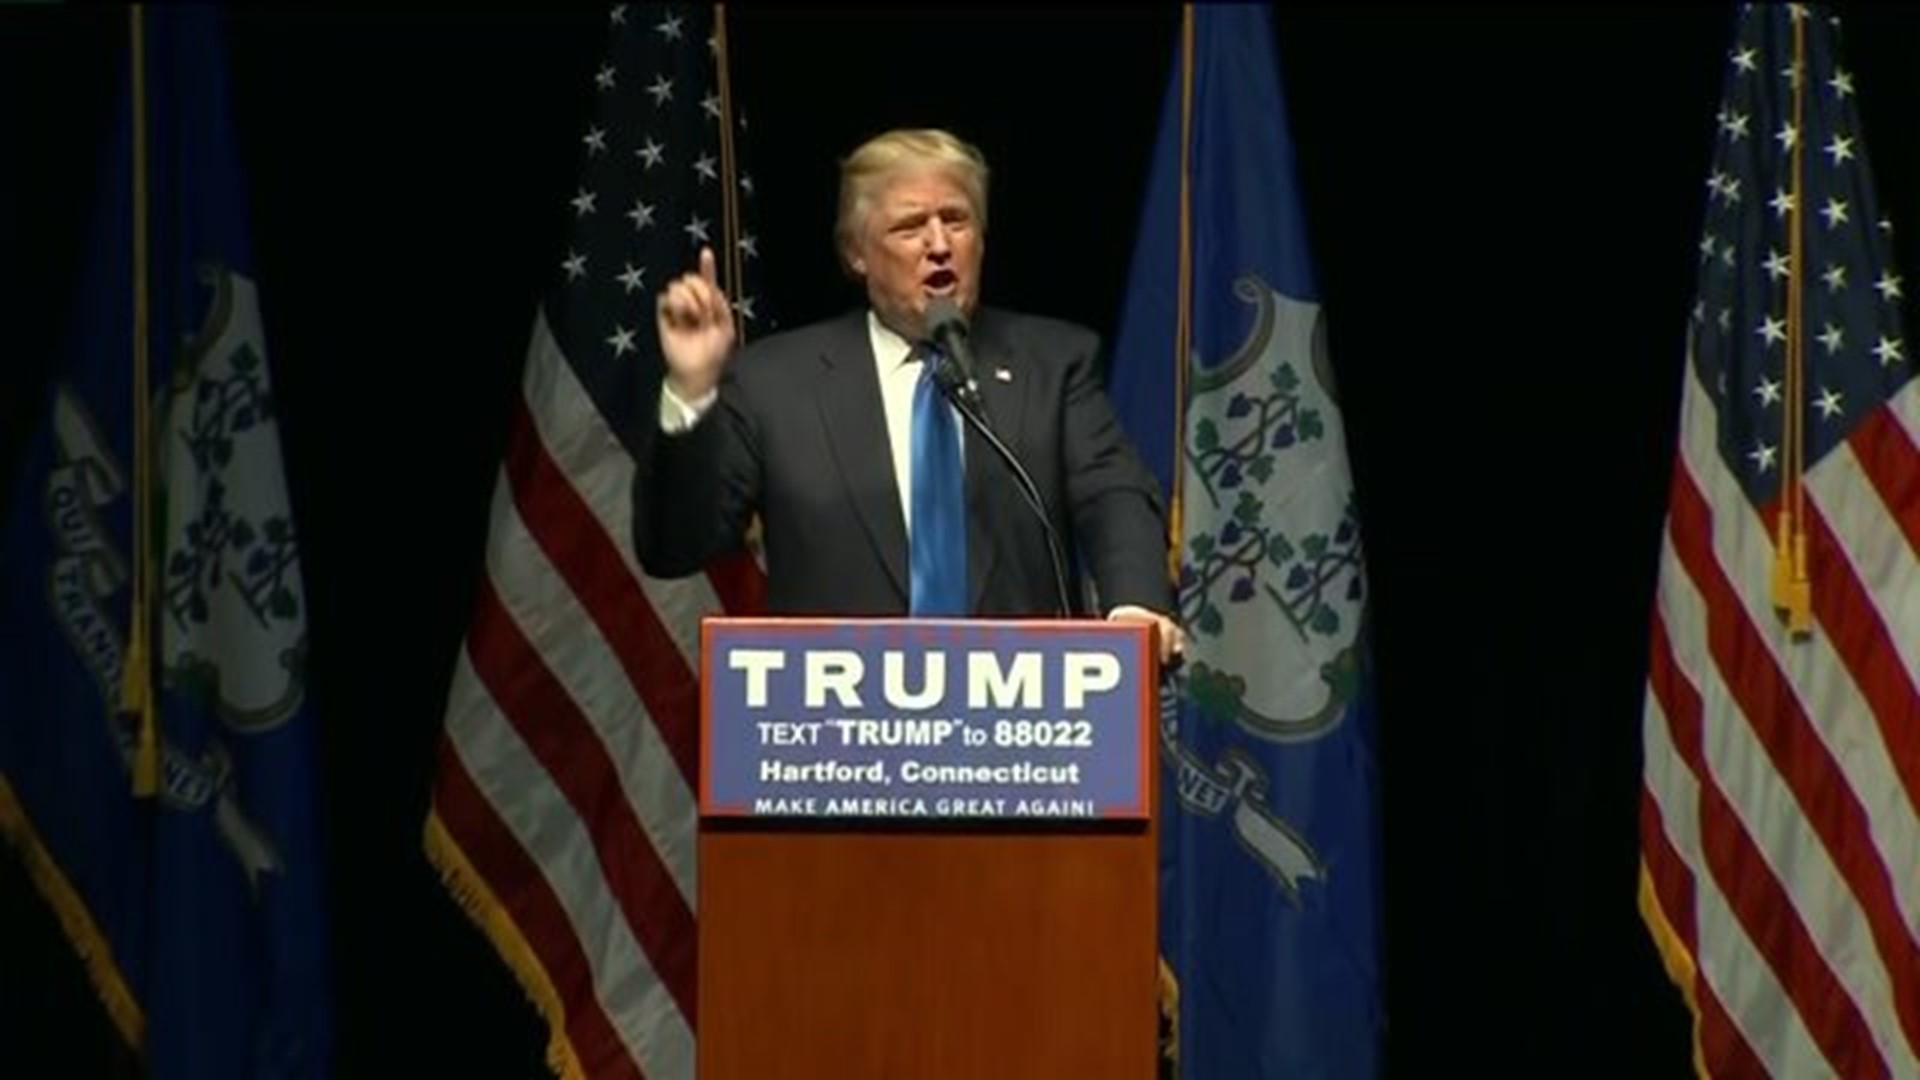 Trump speaks in Hartford 3